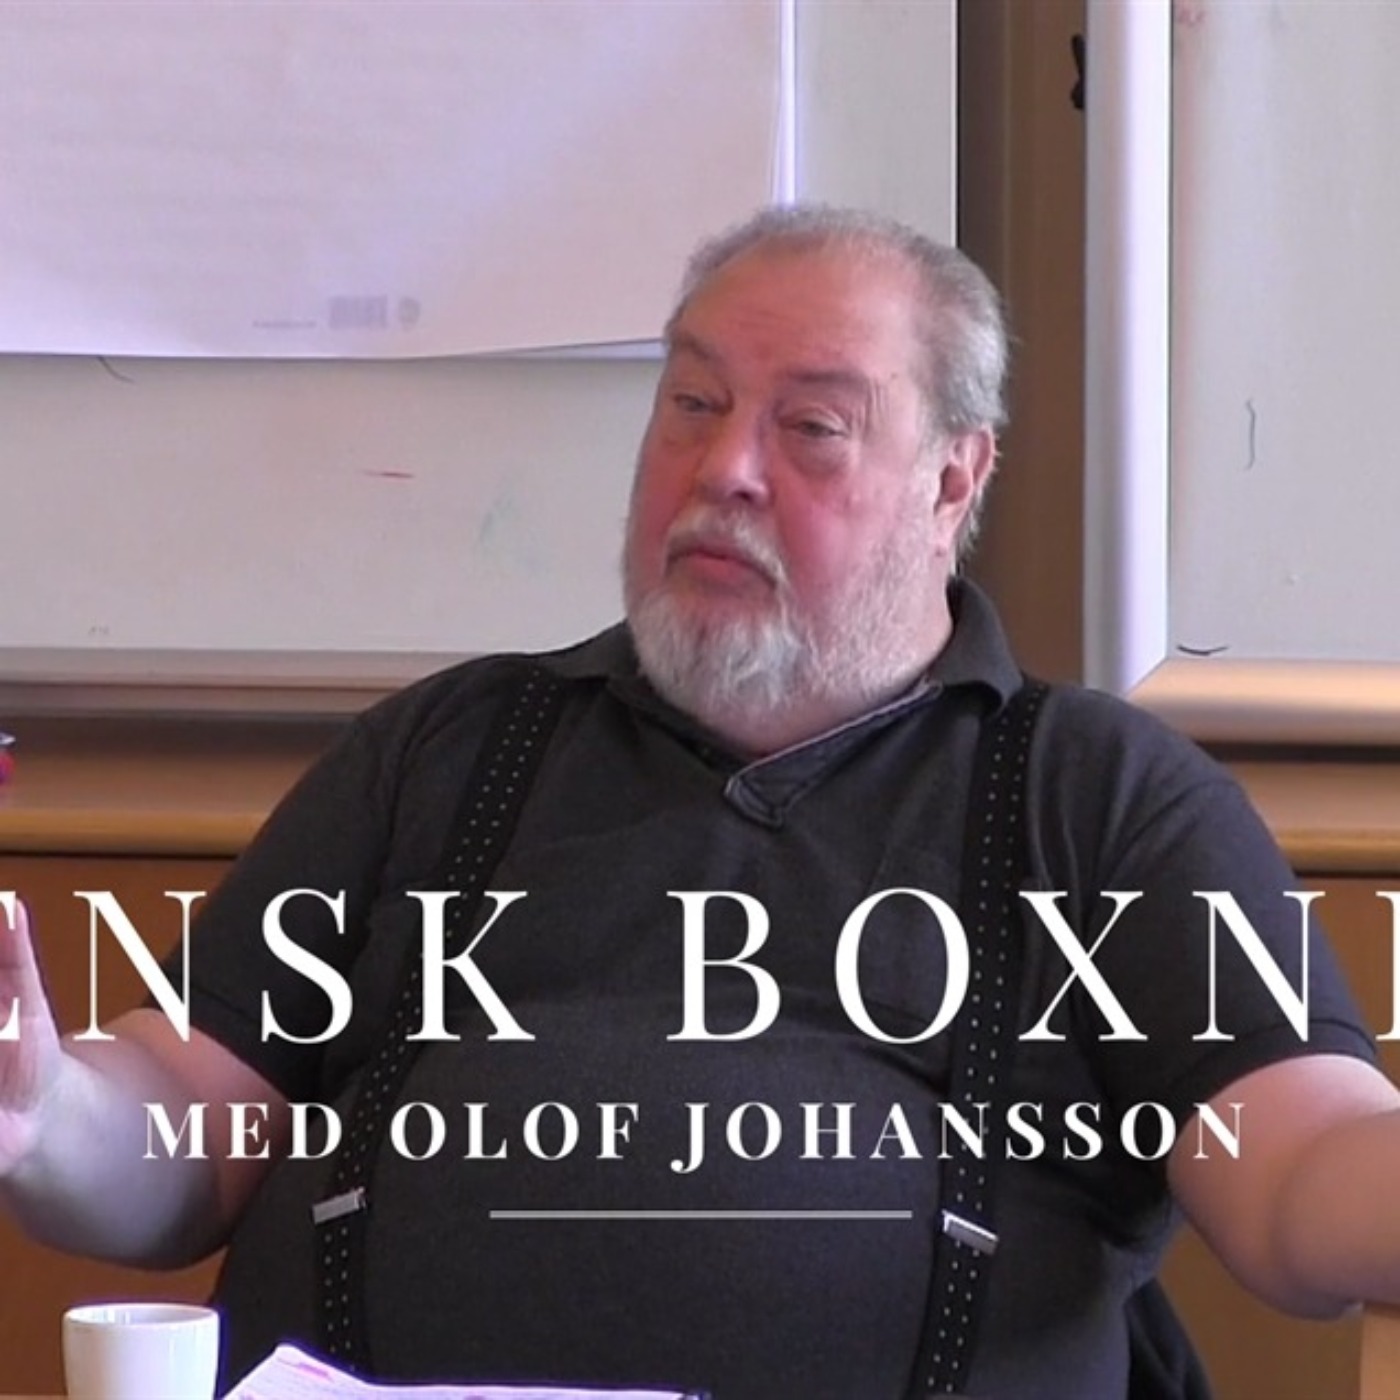 Svensk boksehistorie med Olof Johansson